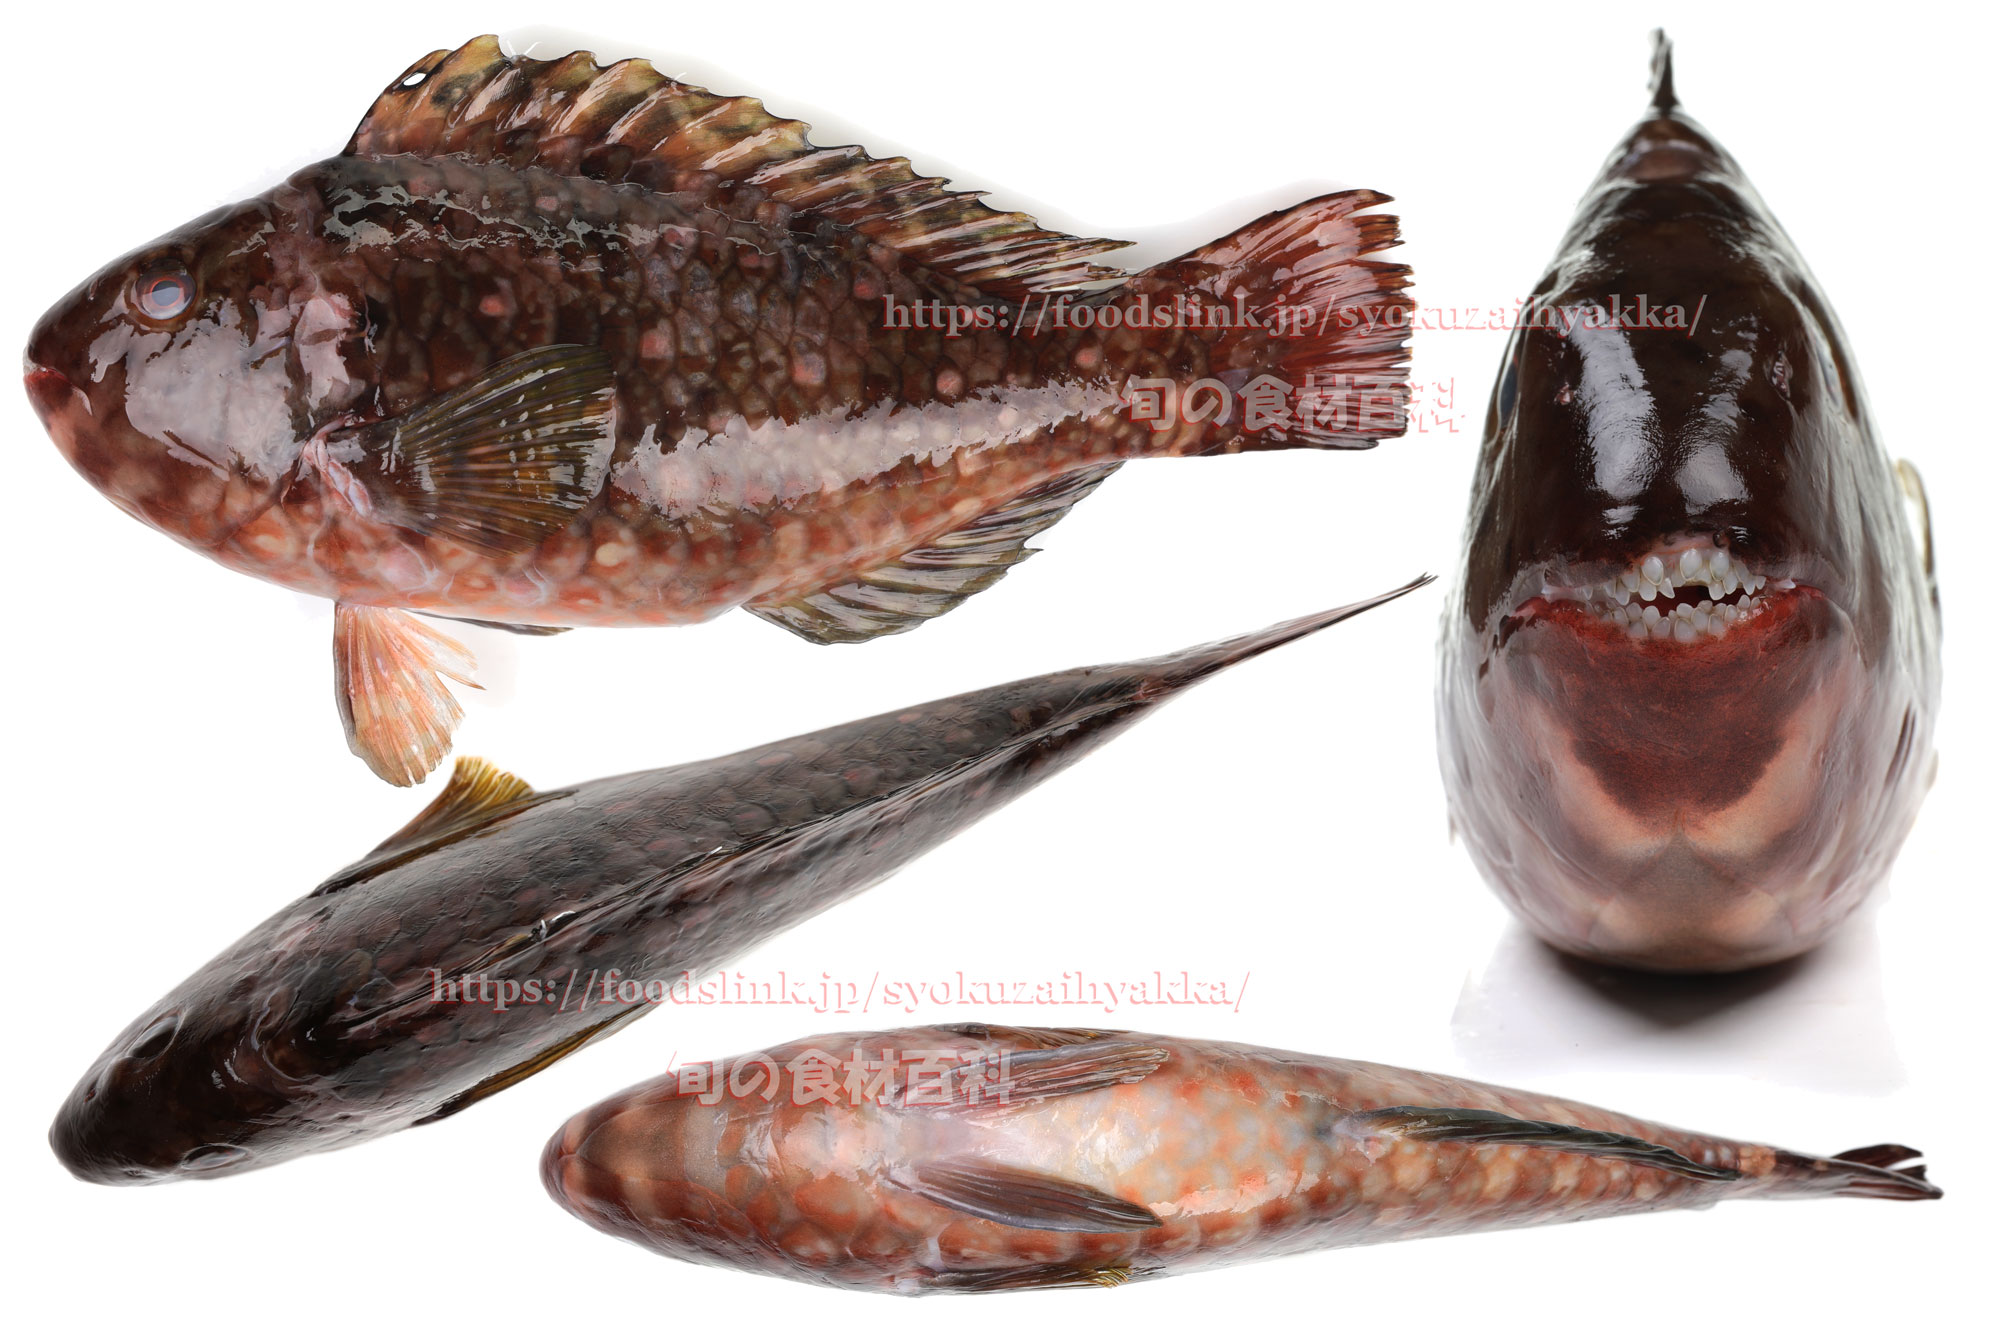 ブダイ Calotomus Japonicus 旬の魚介百科